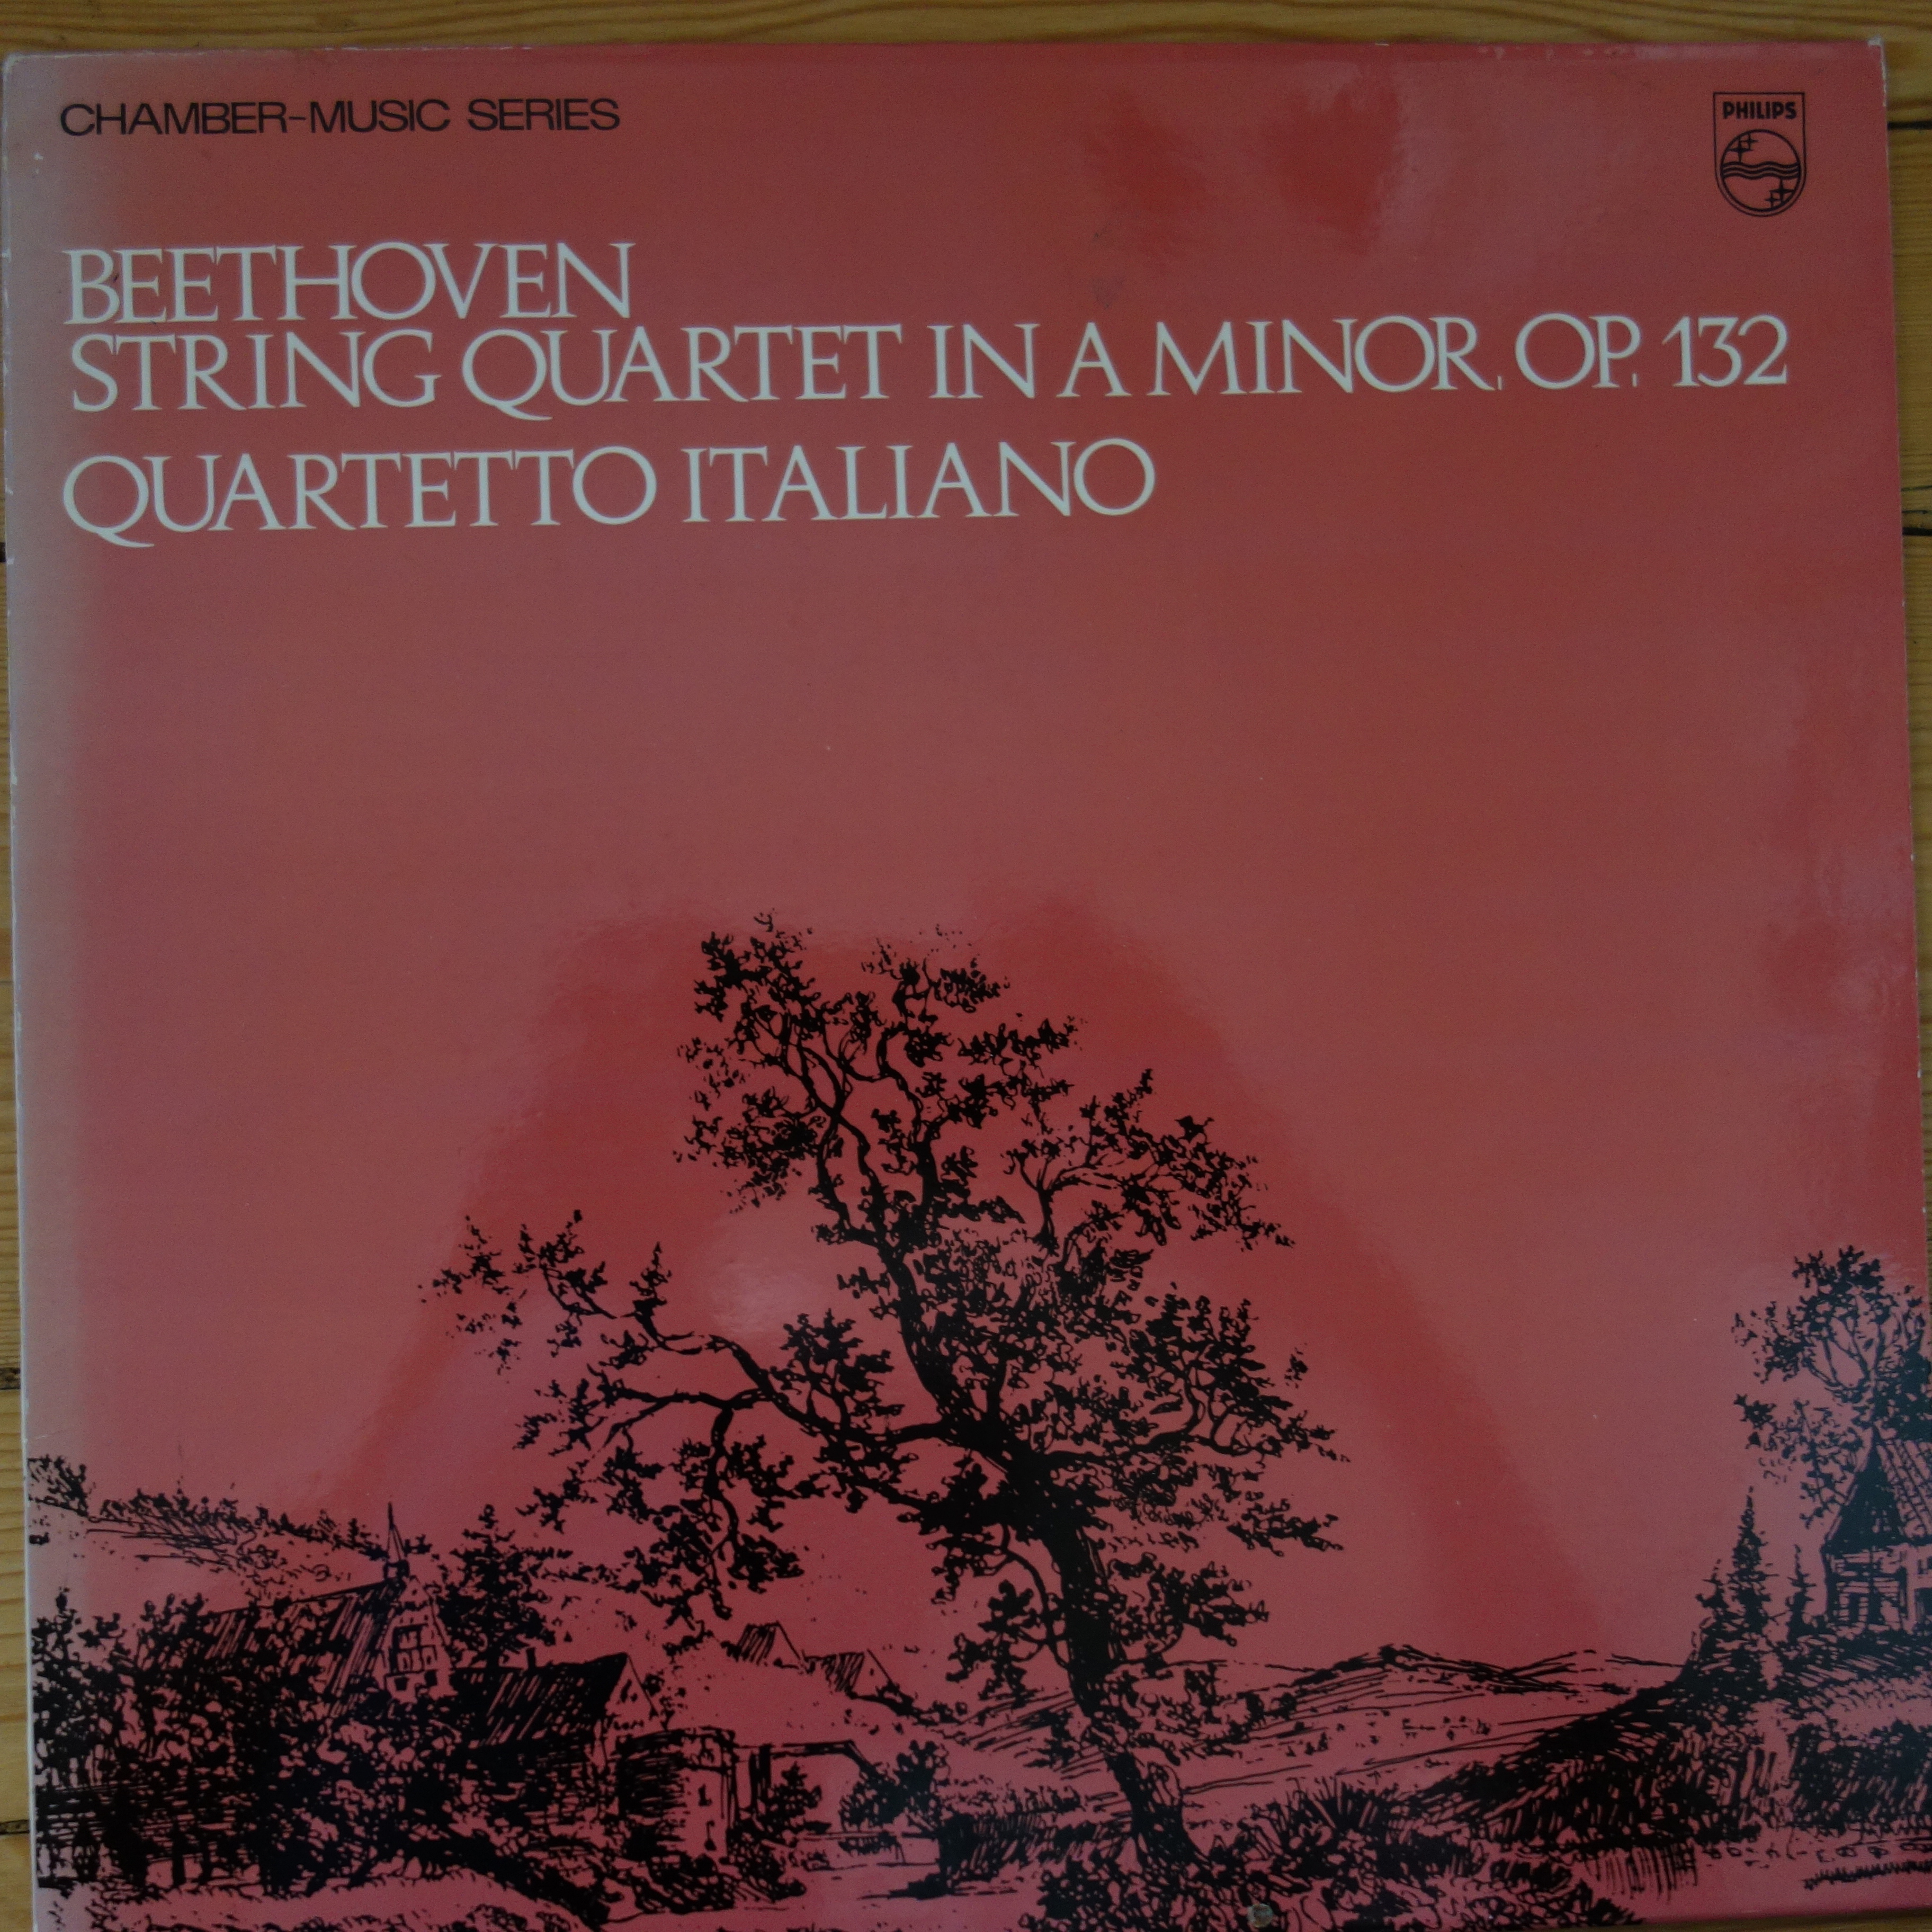 SAL 3638 Beethoven String Quartet No. 15 in A min / Quartetto Italiano